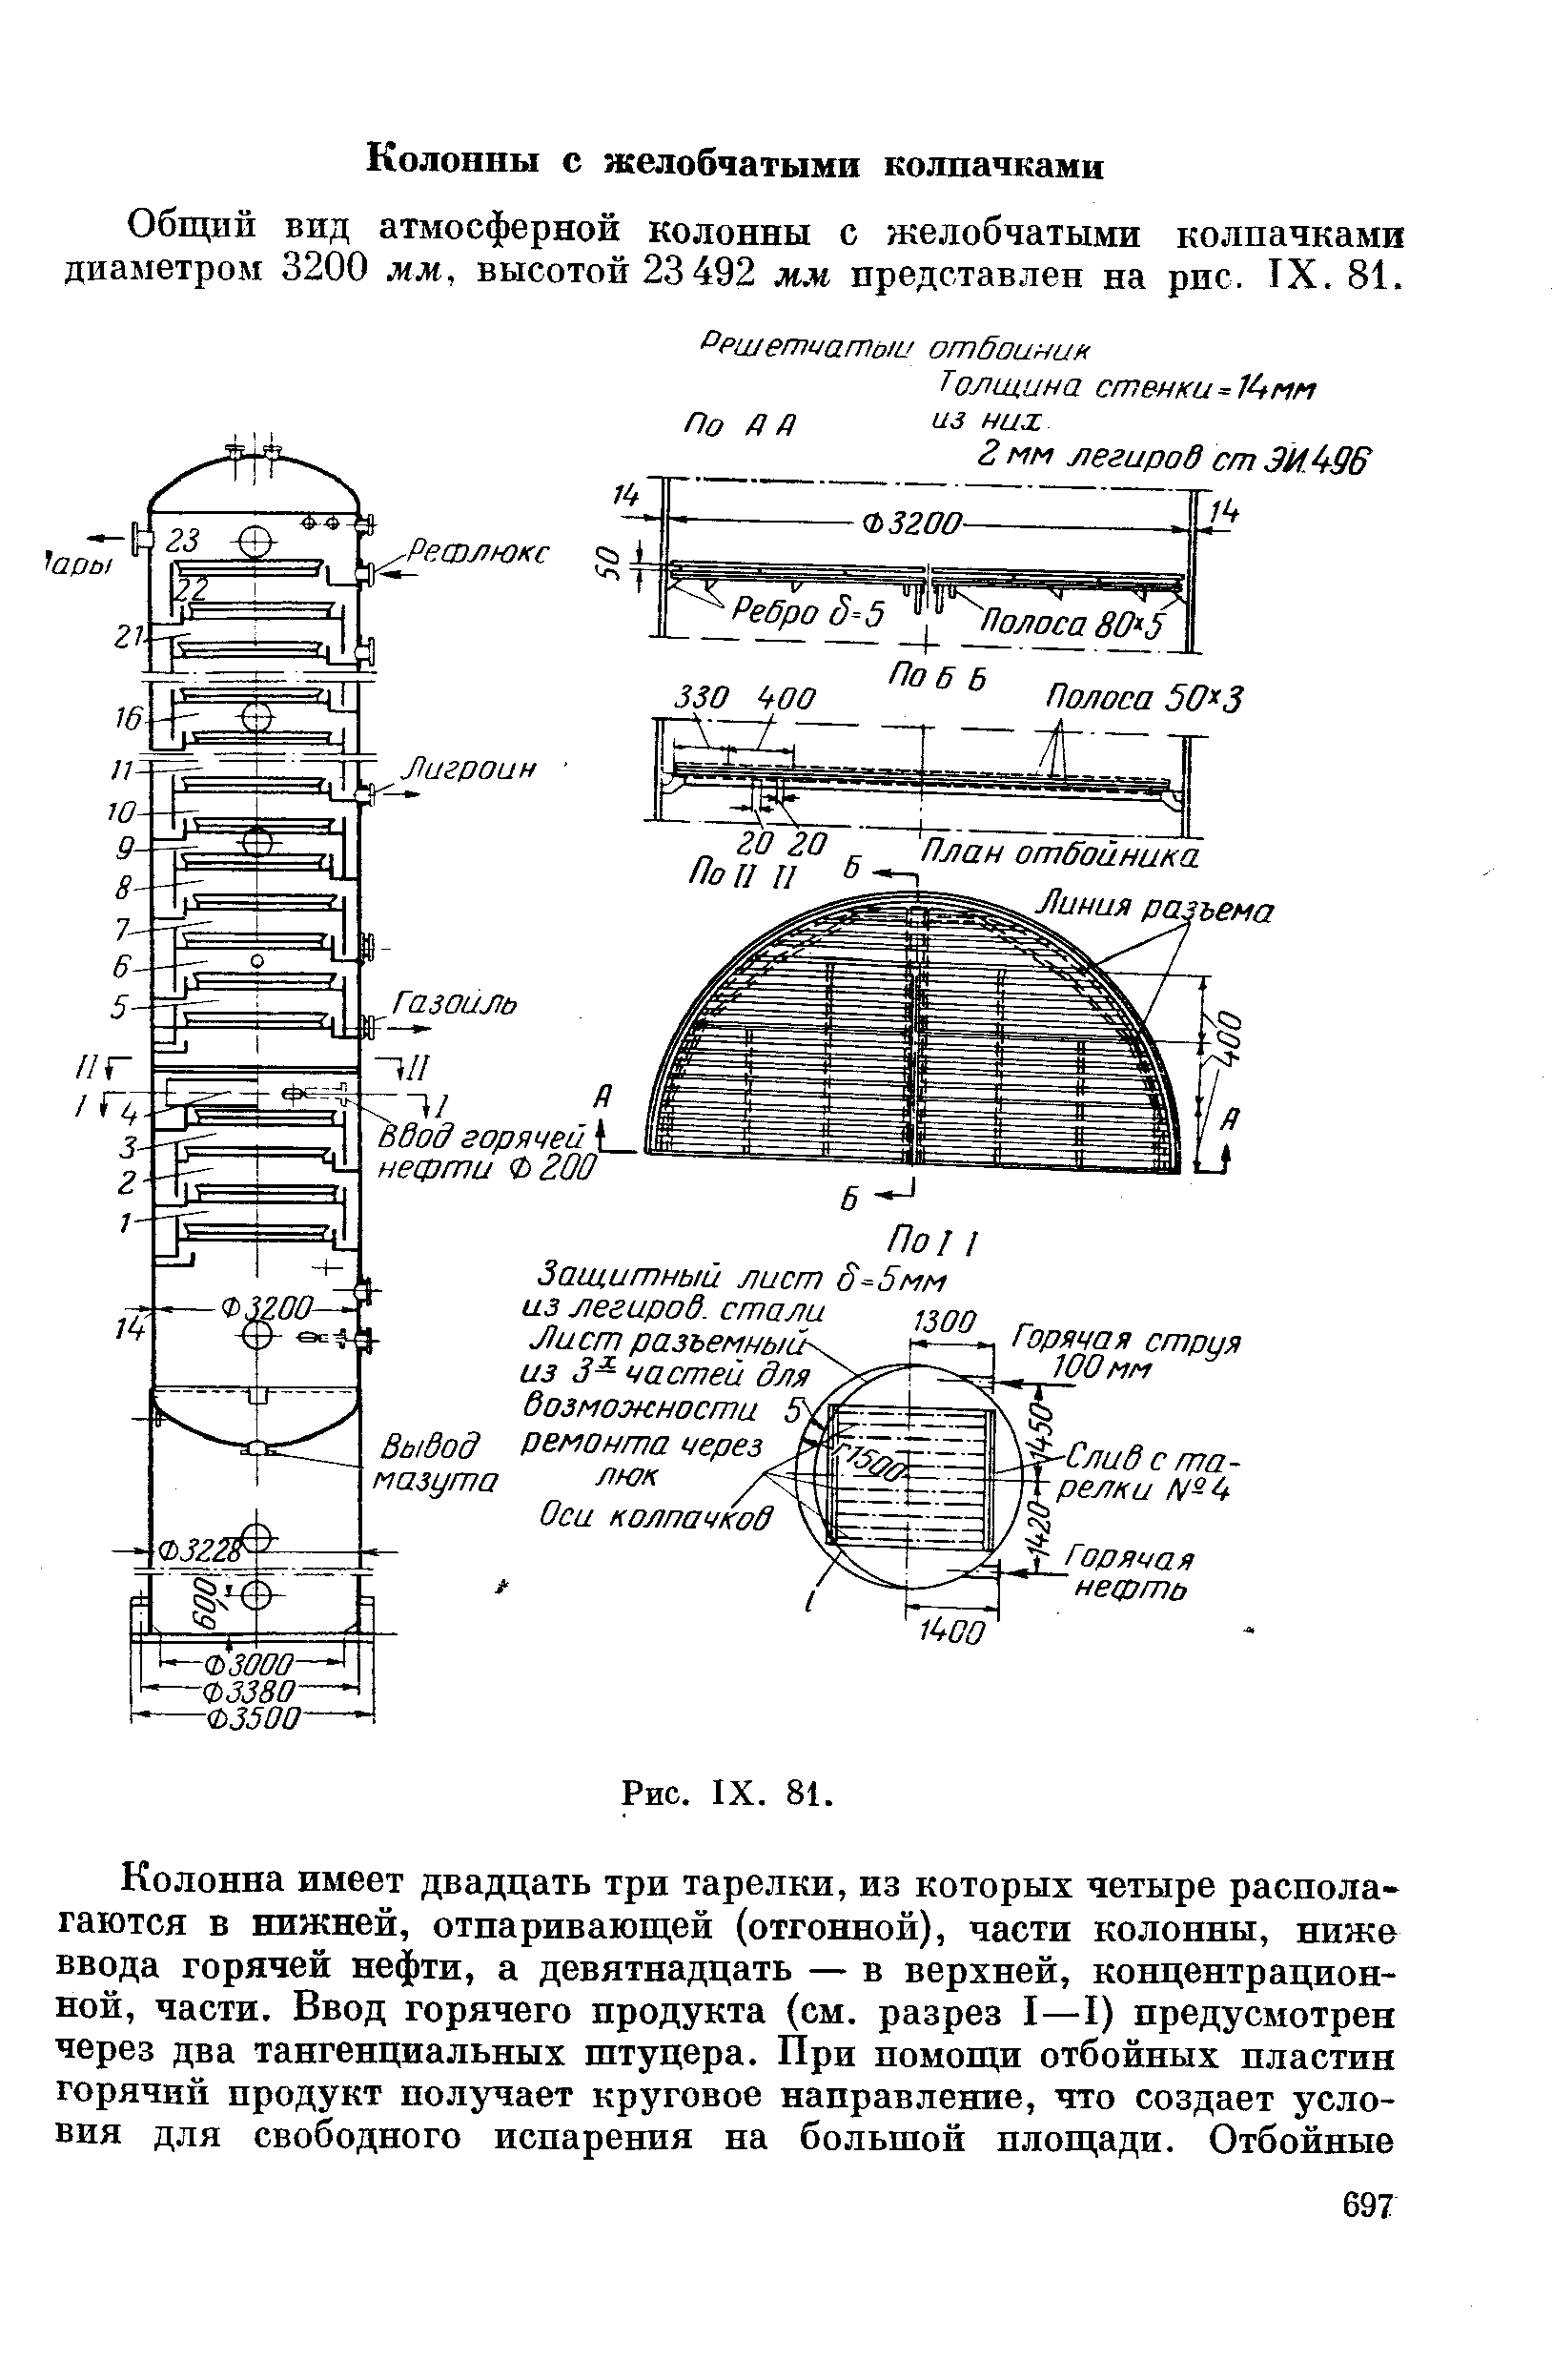 Общий вид атмосферной колонны с желобчатыми колпачками диаметром 3200 мм, высотой 23492 мм представлен на рпс. IX. 81.